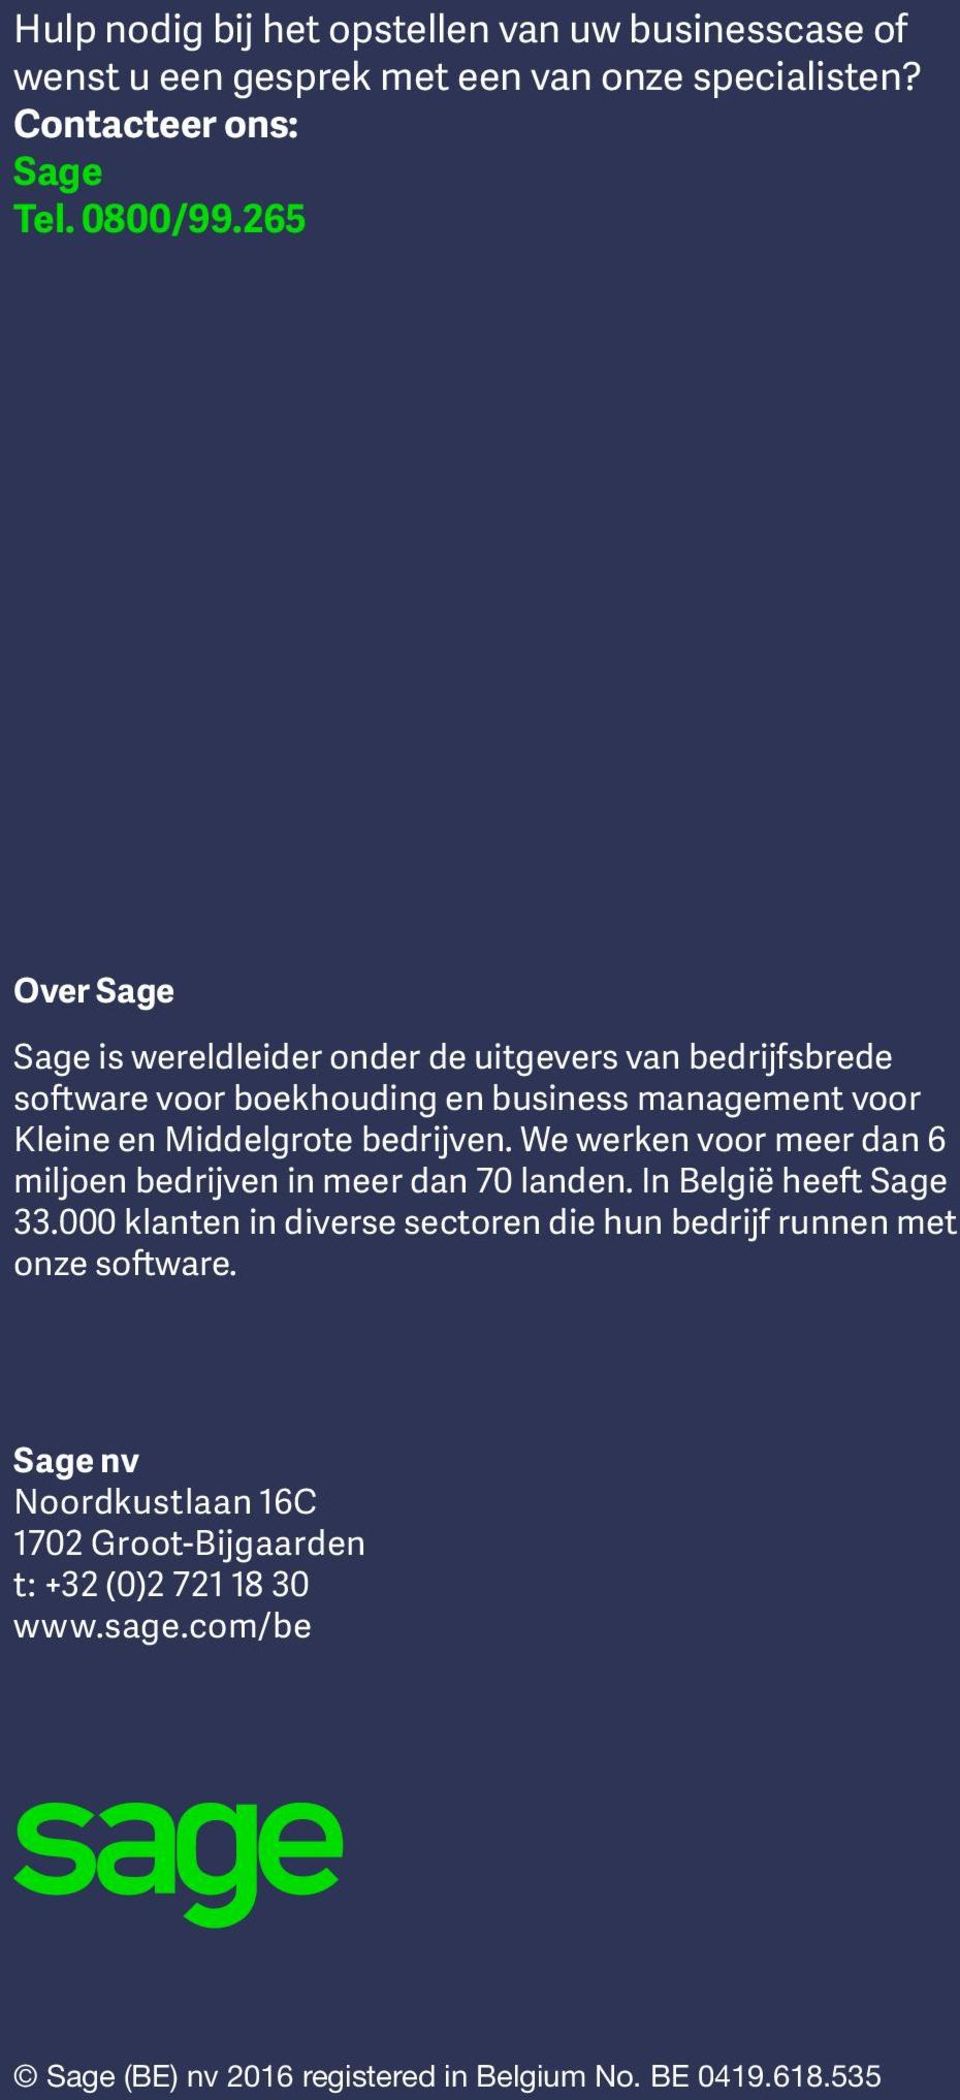 We werken voor meer dan 6 miljoen bedrijven in meer dan 70 landen. In België heeft Sage 33.000 klanten in diverse sectoren die hun bedrijf runnen met onze software.